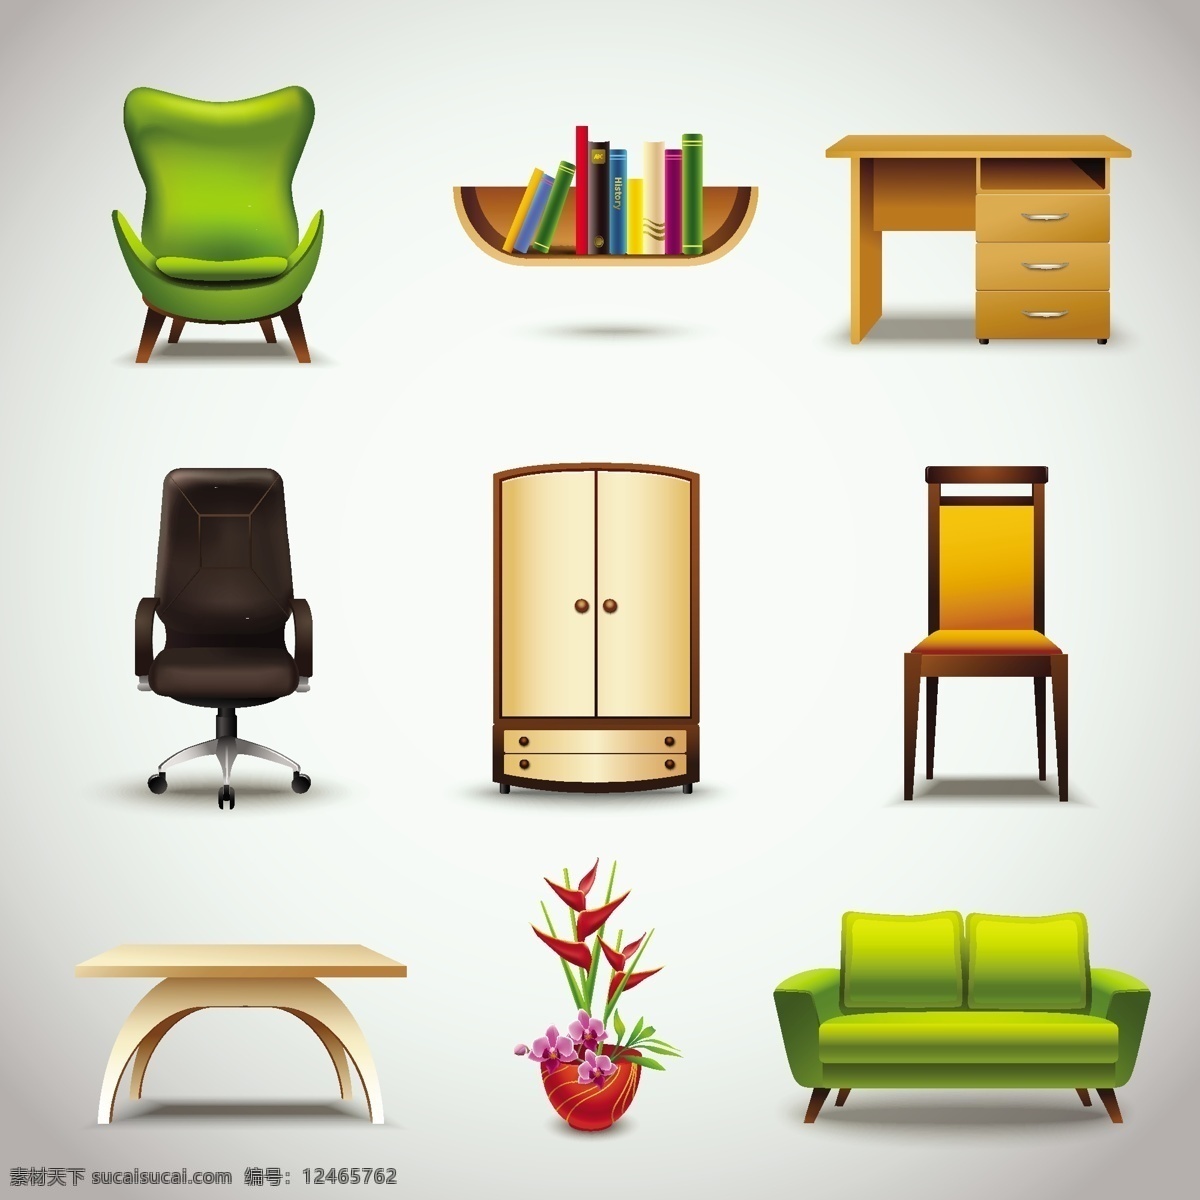 精美 家具设计 矢量图 椅子 沙发 书架 书桌 衣柜 木桌 盆栽 办公椅 双人沙发 家具 家居 白色